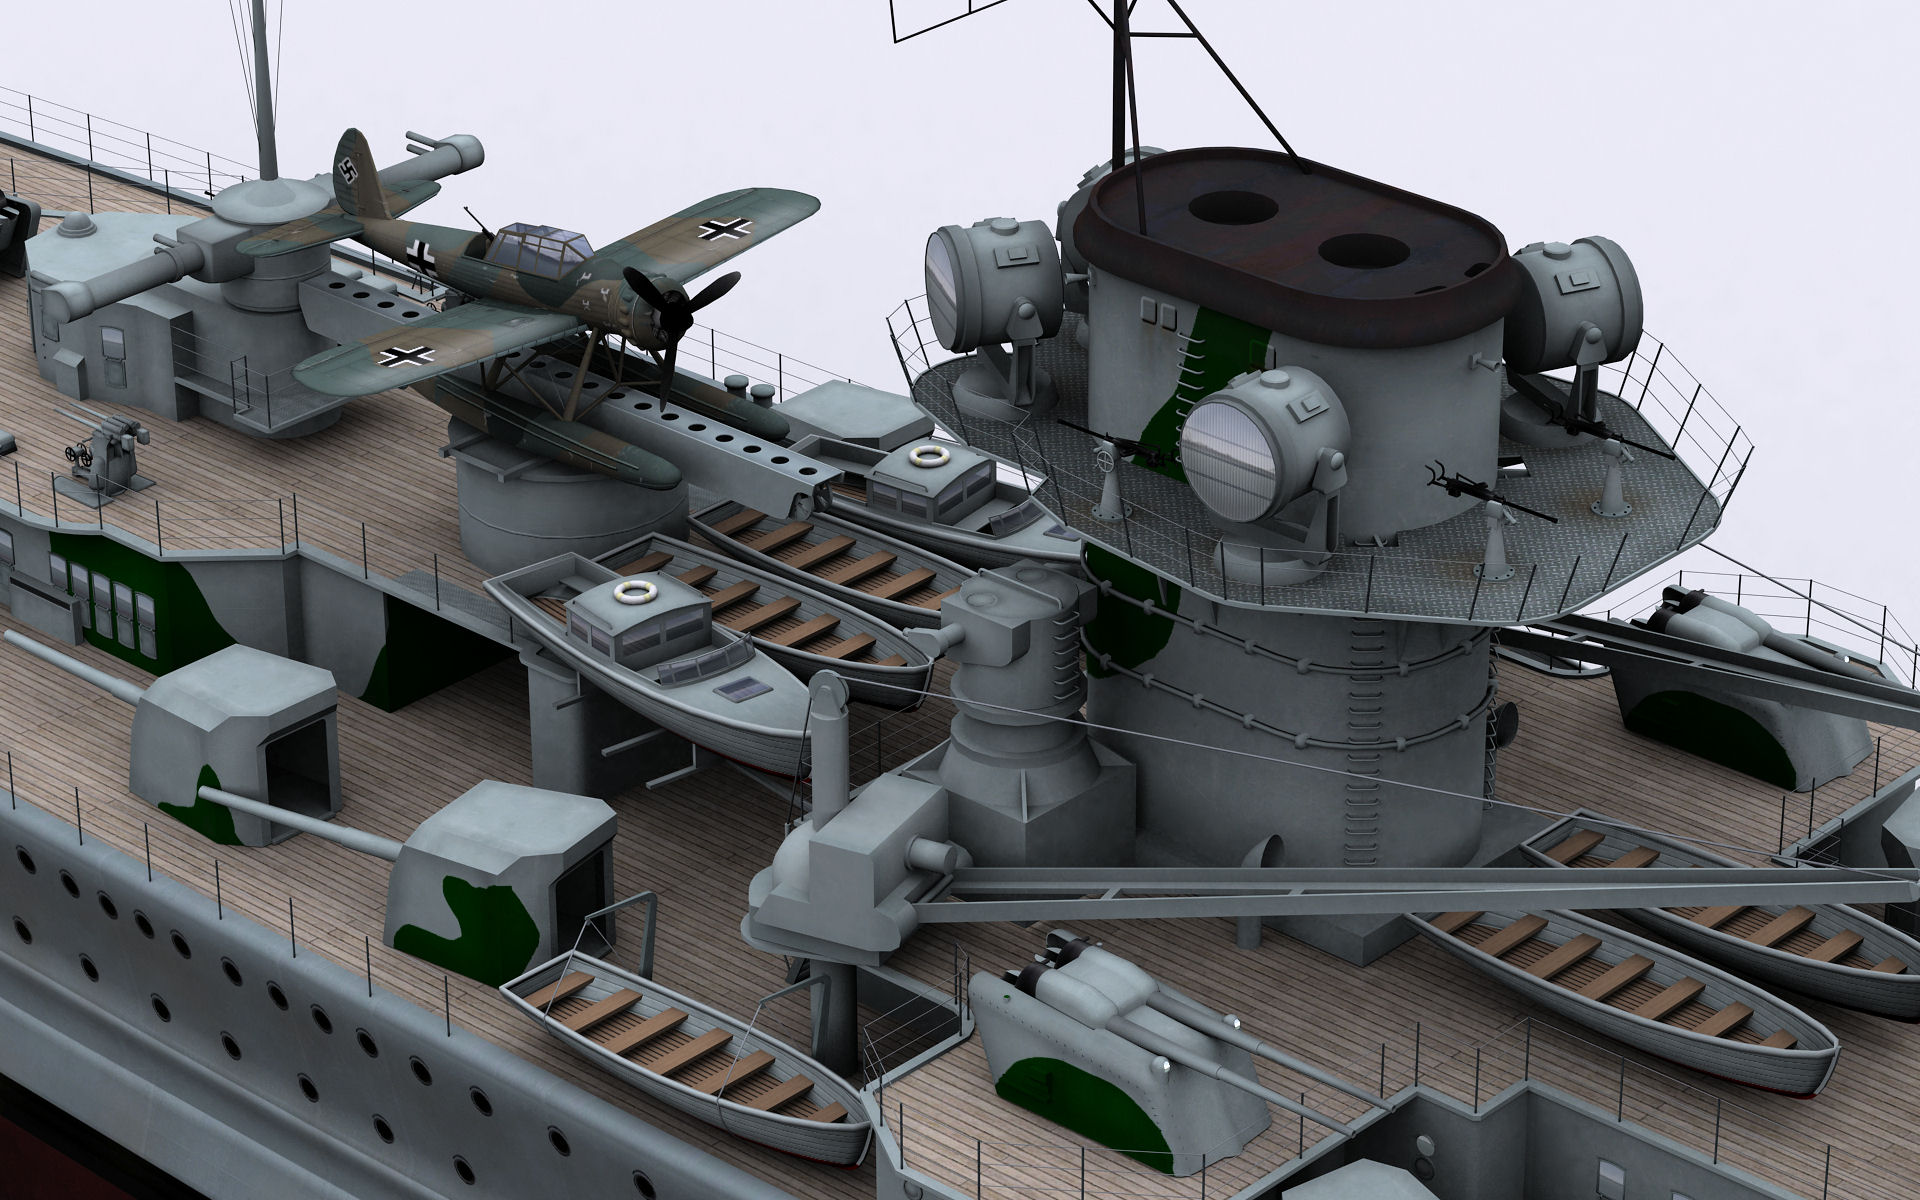 Admiral Graf Spee The Battleship